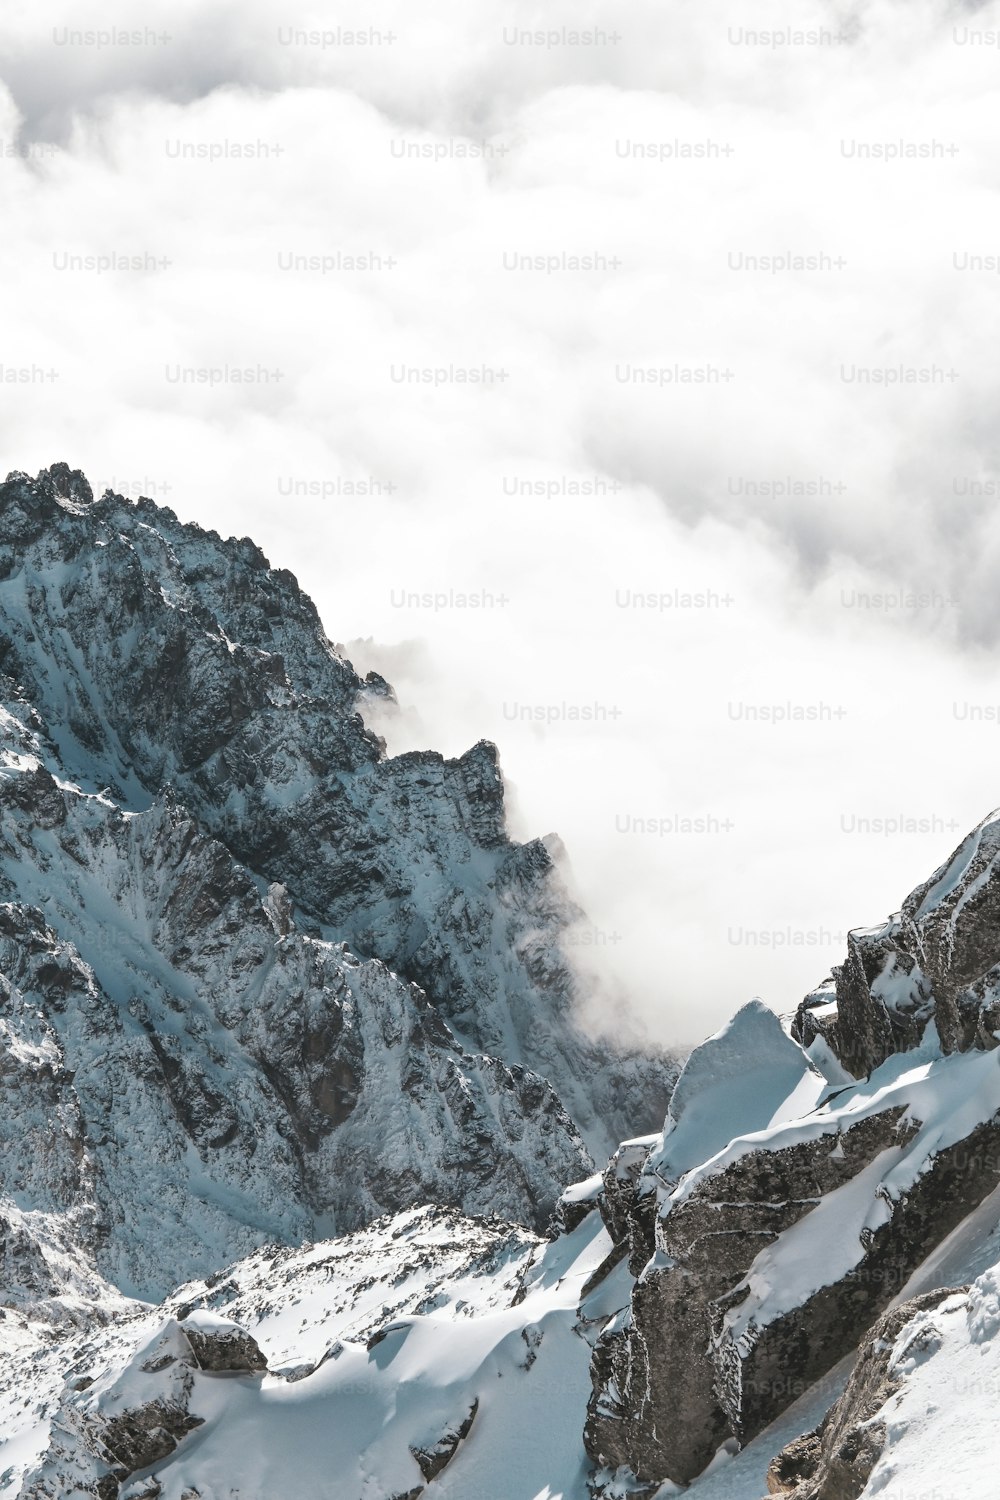 Un homme debout au sommet d’une montagne enneigée